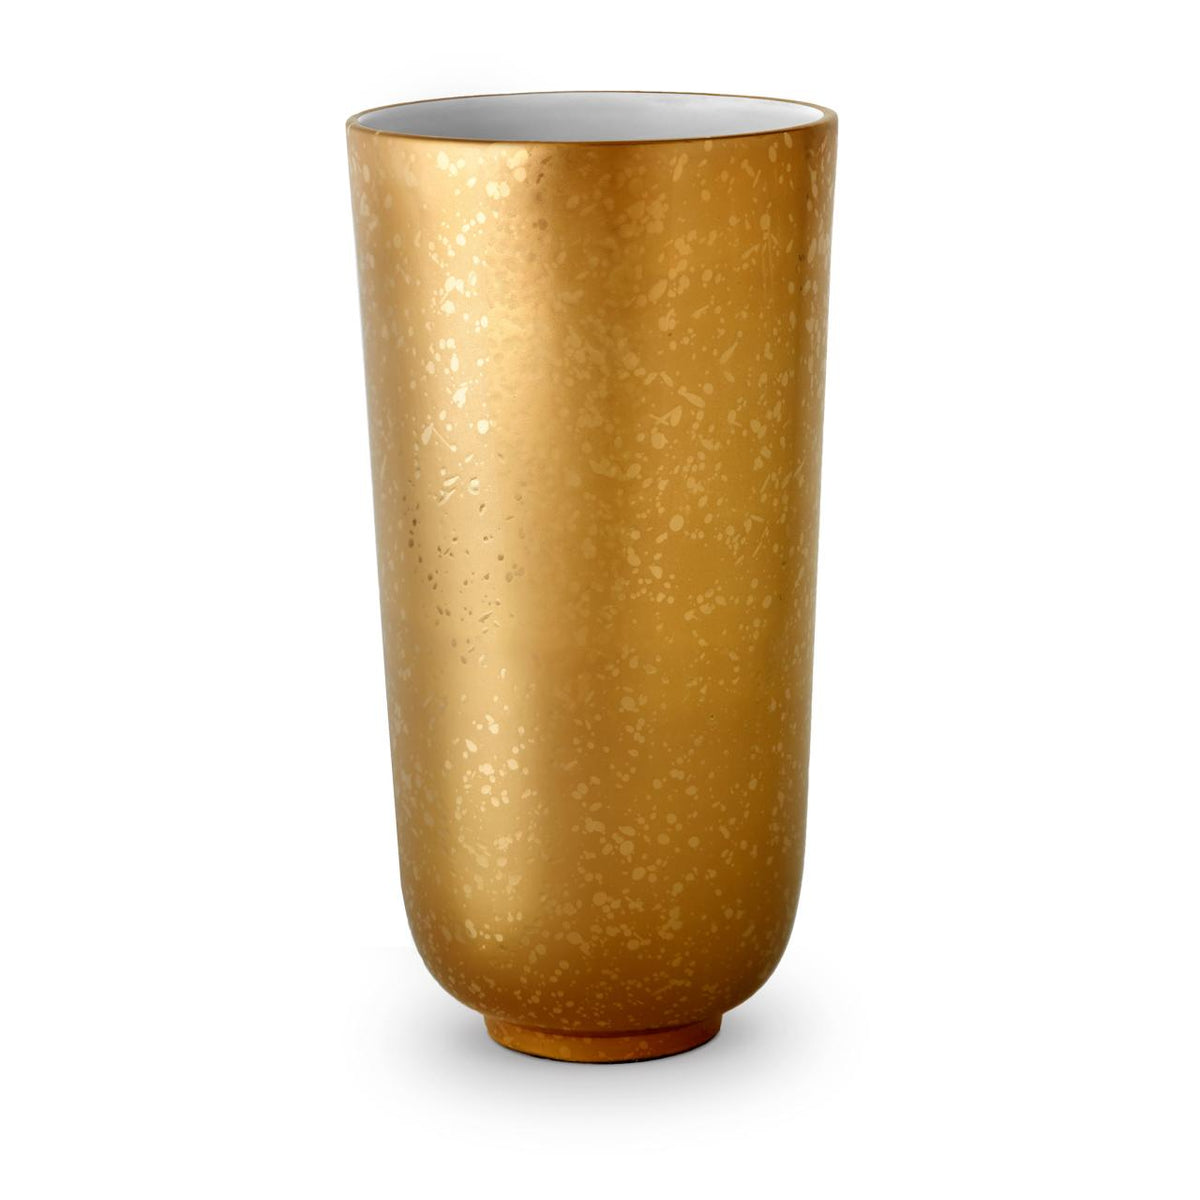 Alchimie Vase - Large - RSVP Style